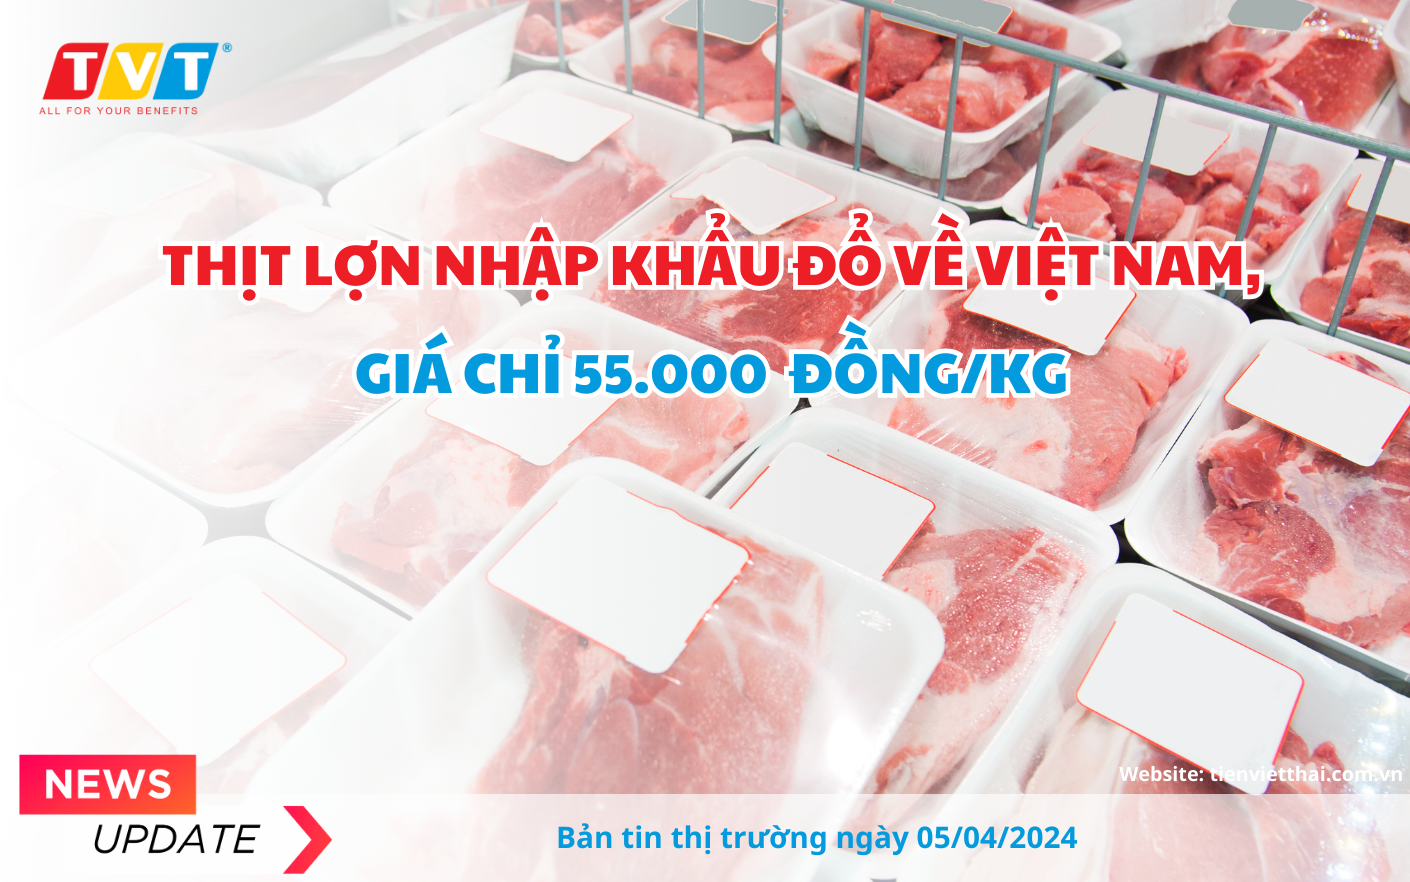 Thịt lợn nhập khẩu từ các quốc gia trên thế giới tiếp tục đổ bộ thị trường Việt với mức giá trung bình chỉ 55.000 đồng/kg